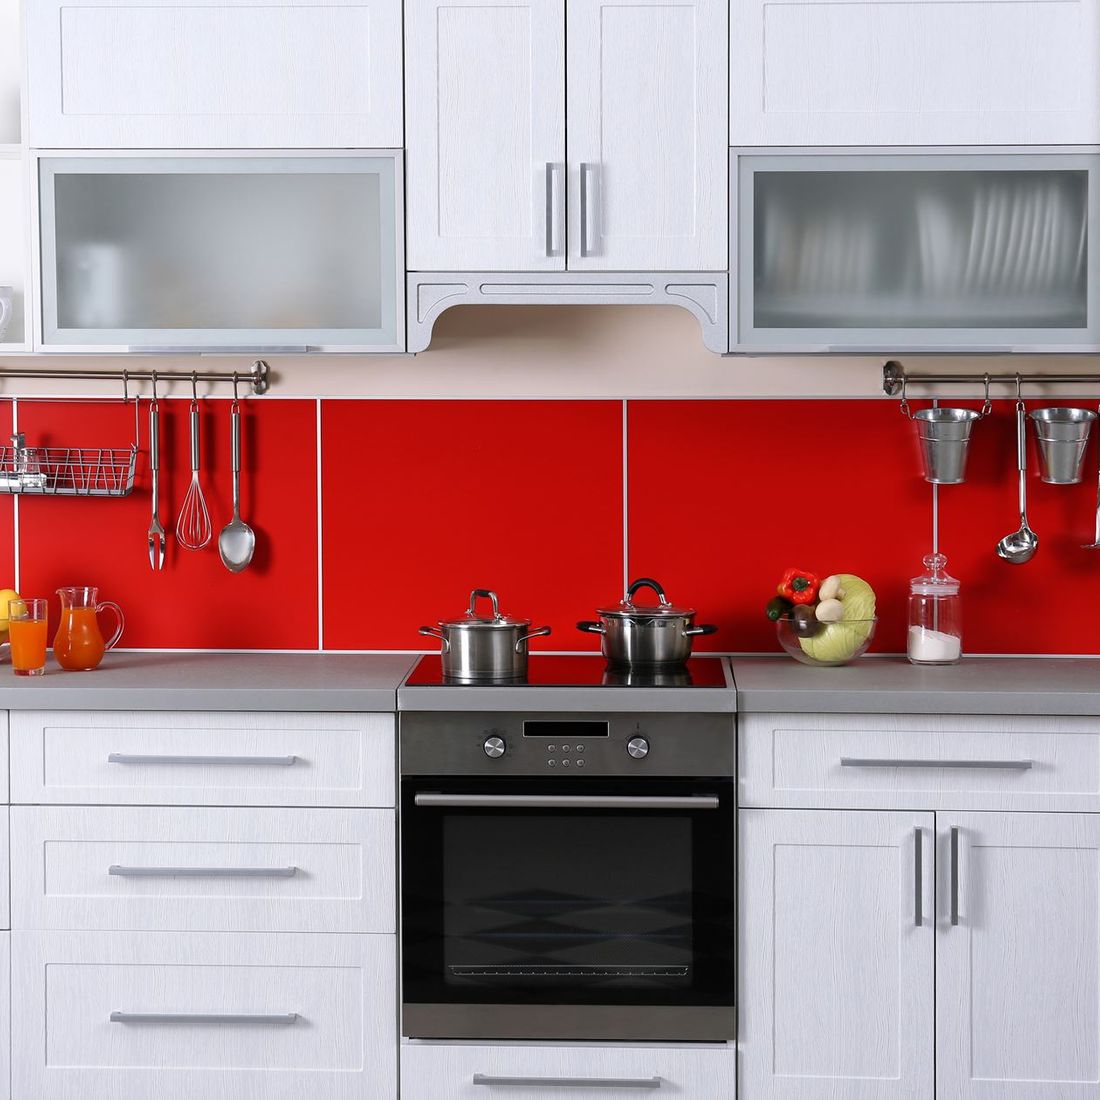 modern kitchen with red splash back